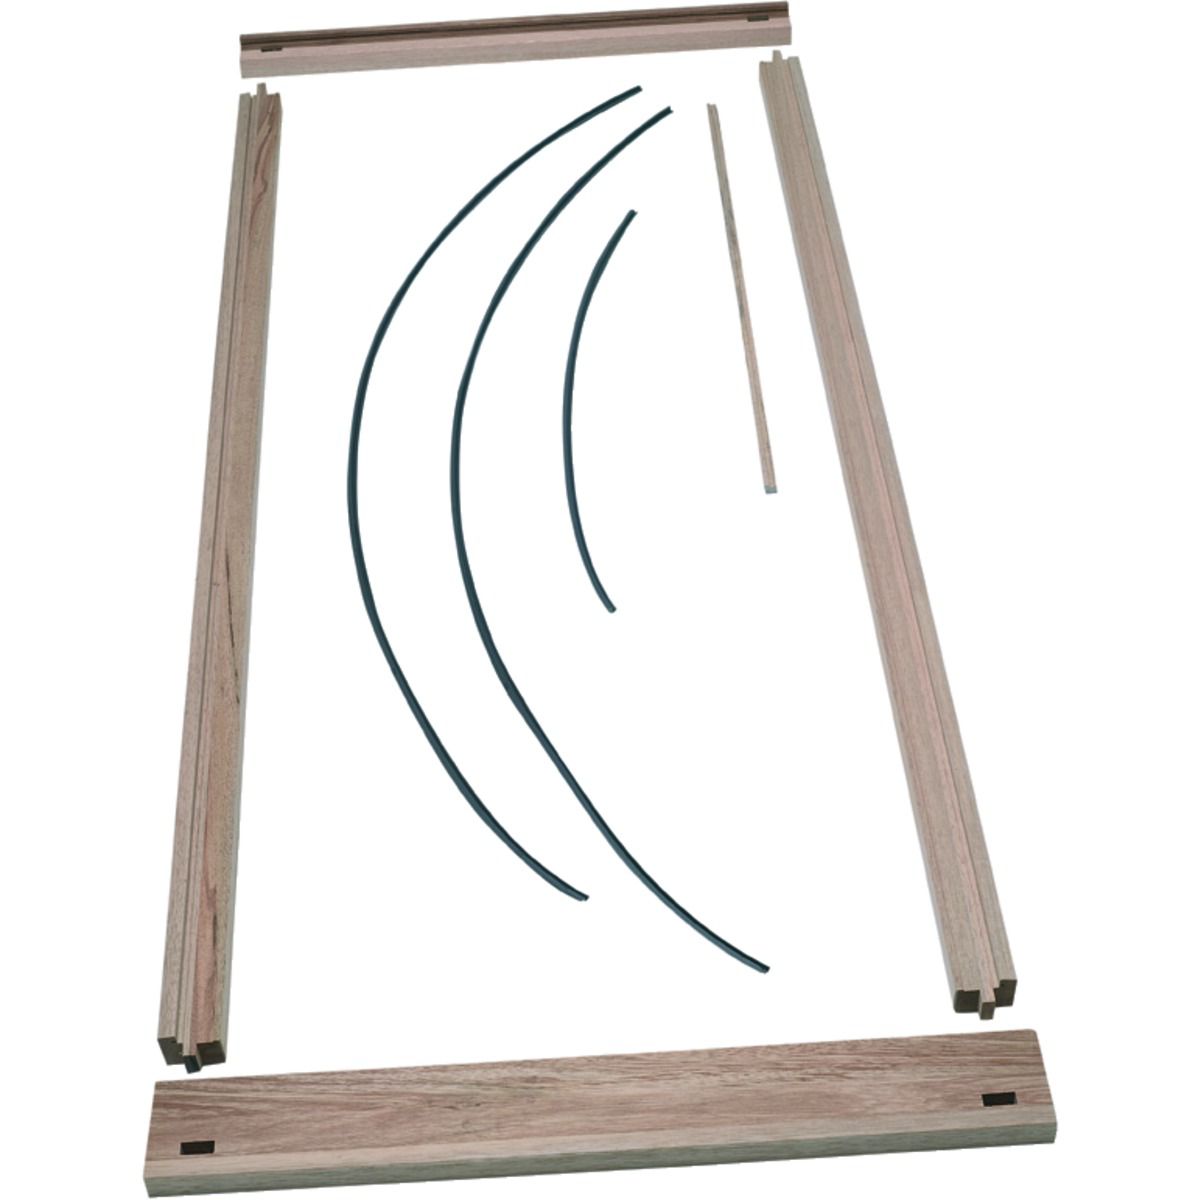 Image of Wickes Exterior Premium Hardwood Door Frame - 2032 x 813mm